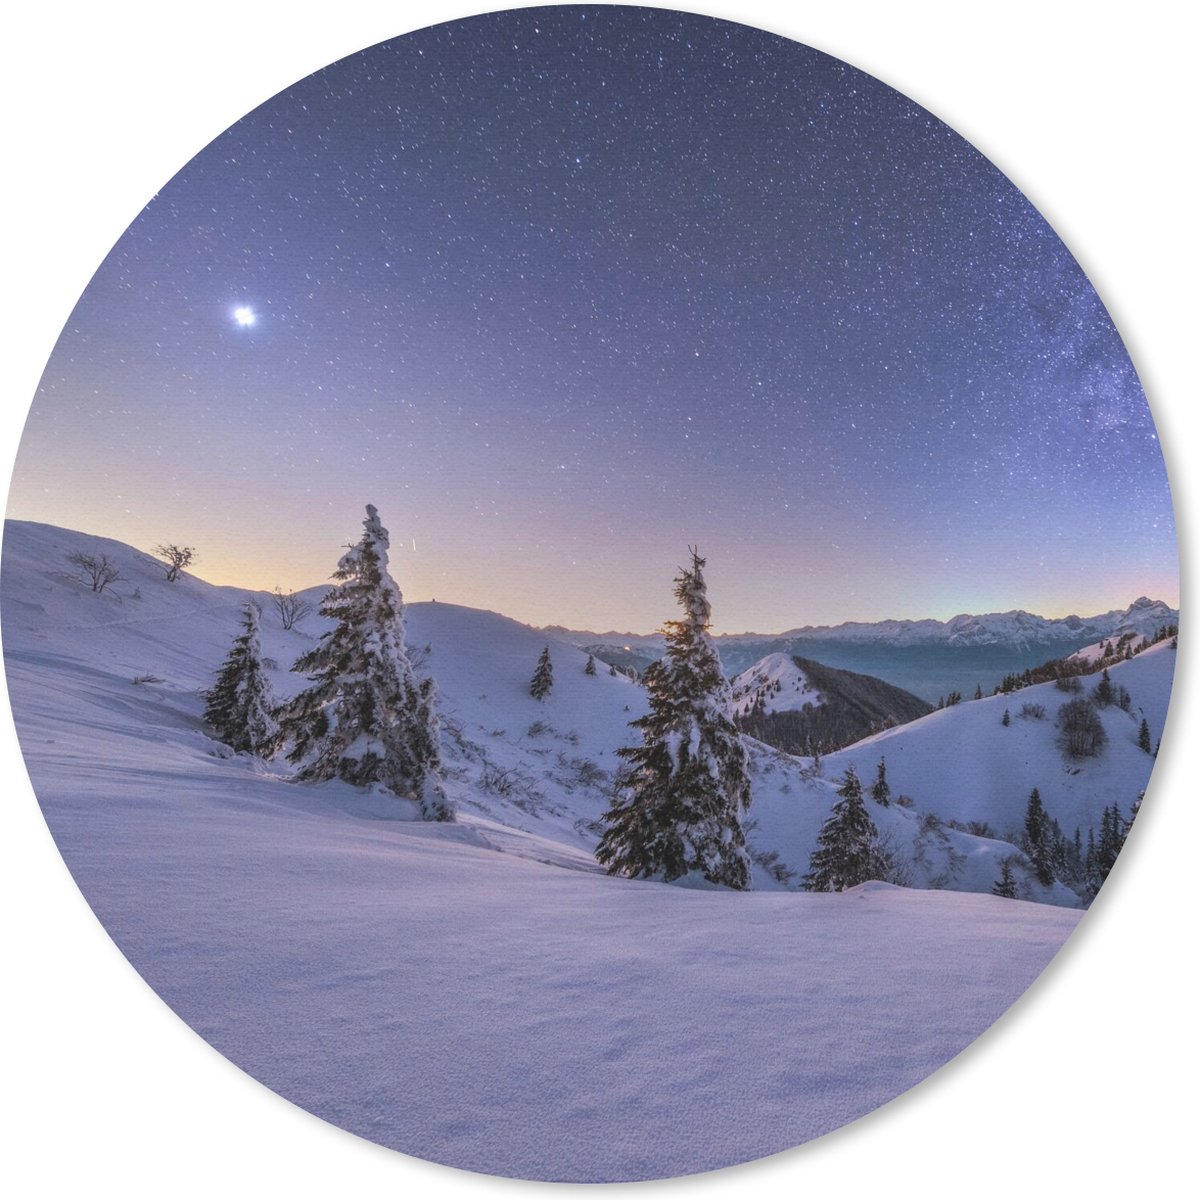 Muismat - Mousepad - Rond - Winter - Sneeuw - Nacht - Bomen - 20x20 cm - Ronde muismat